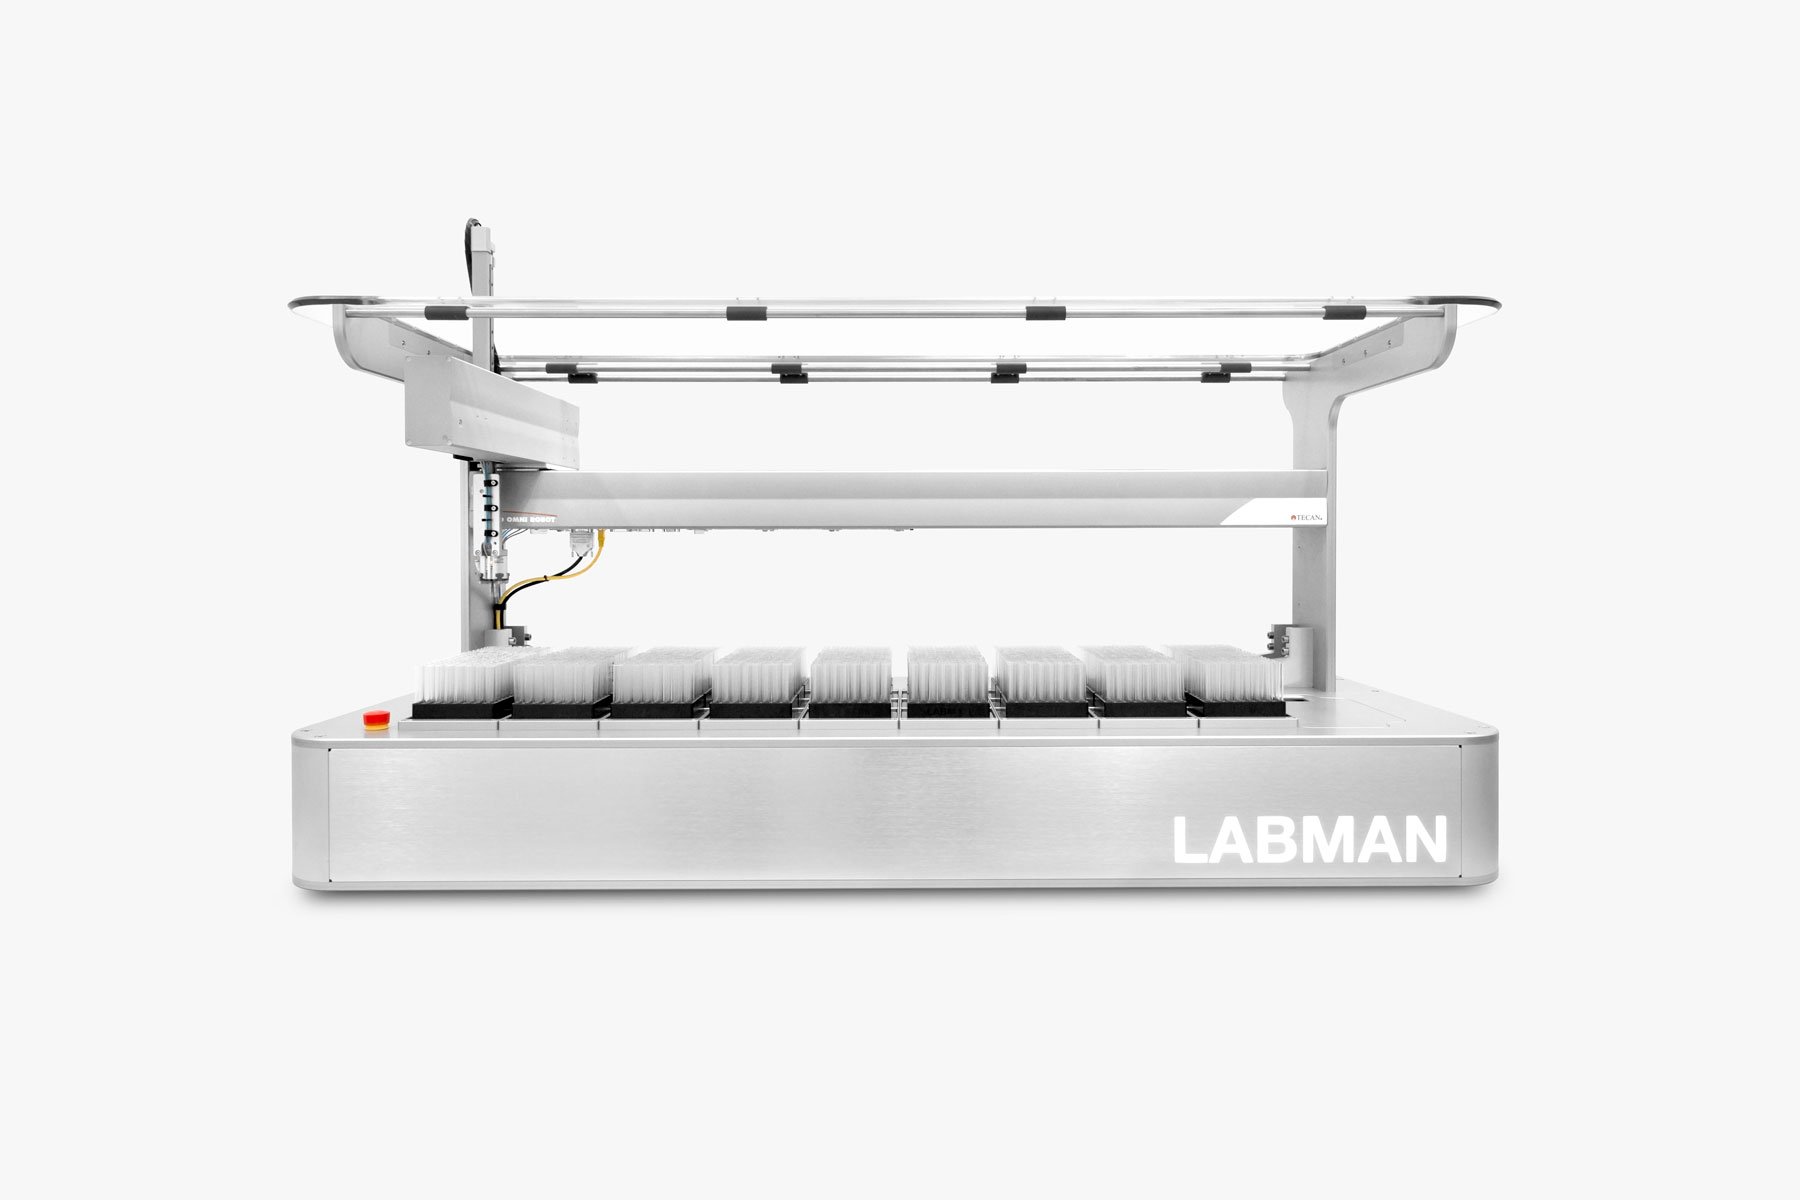 Labman custom system: Vial imaging system